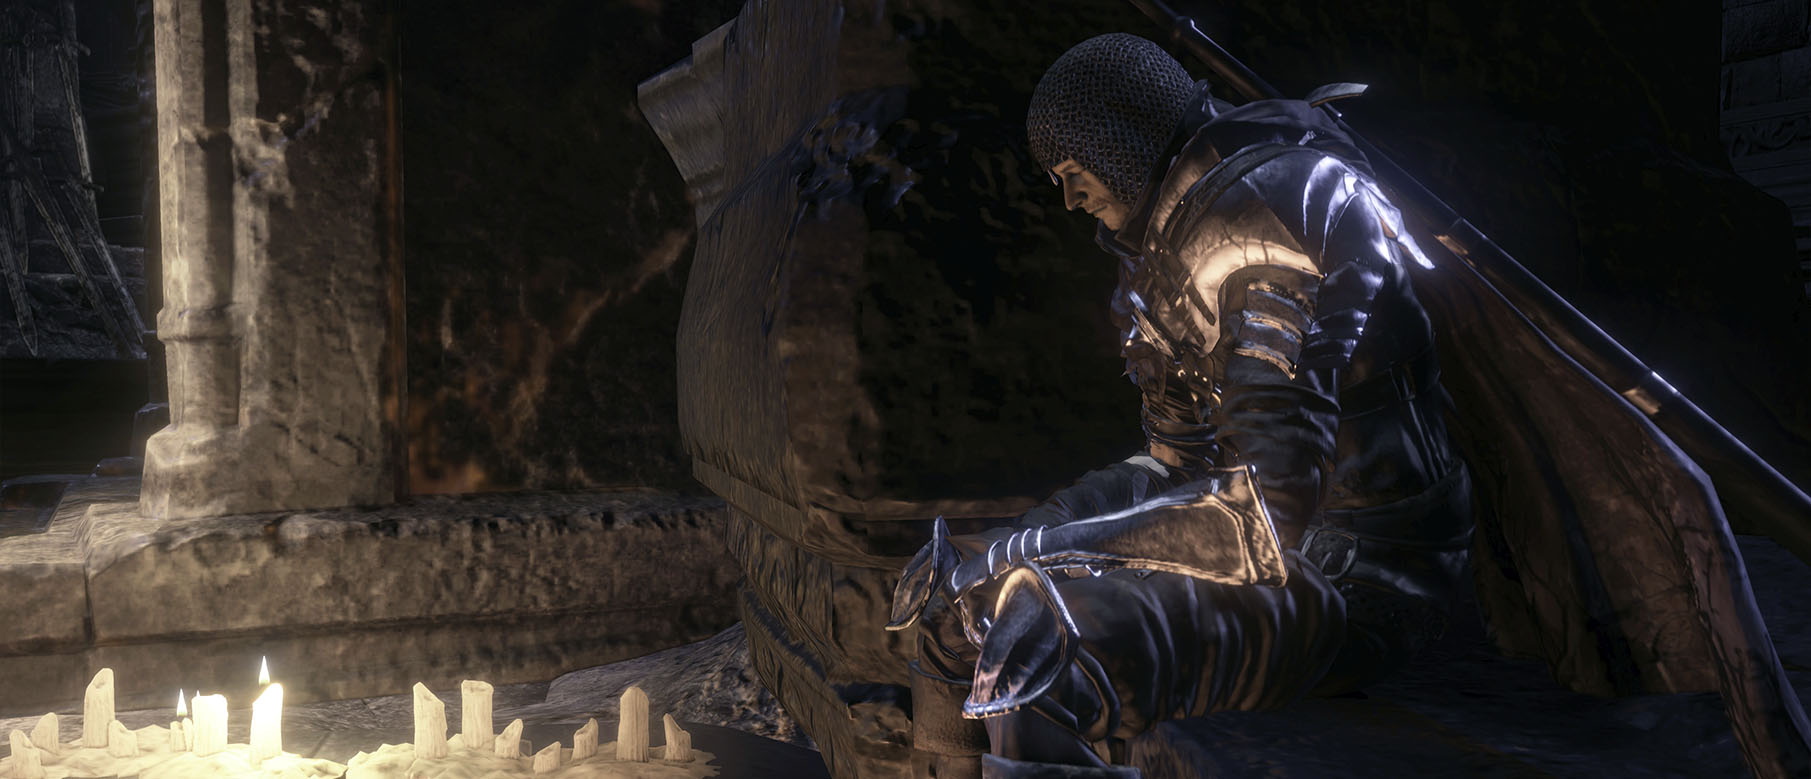 Изображение к Новый геймплей Dark Souls 3 демонстрирует бой с кинжалом и использование лука